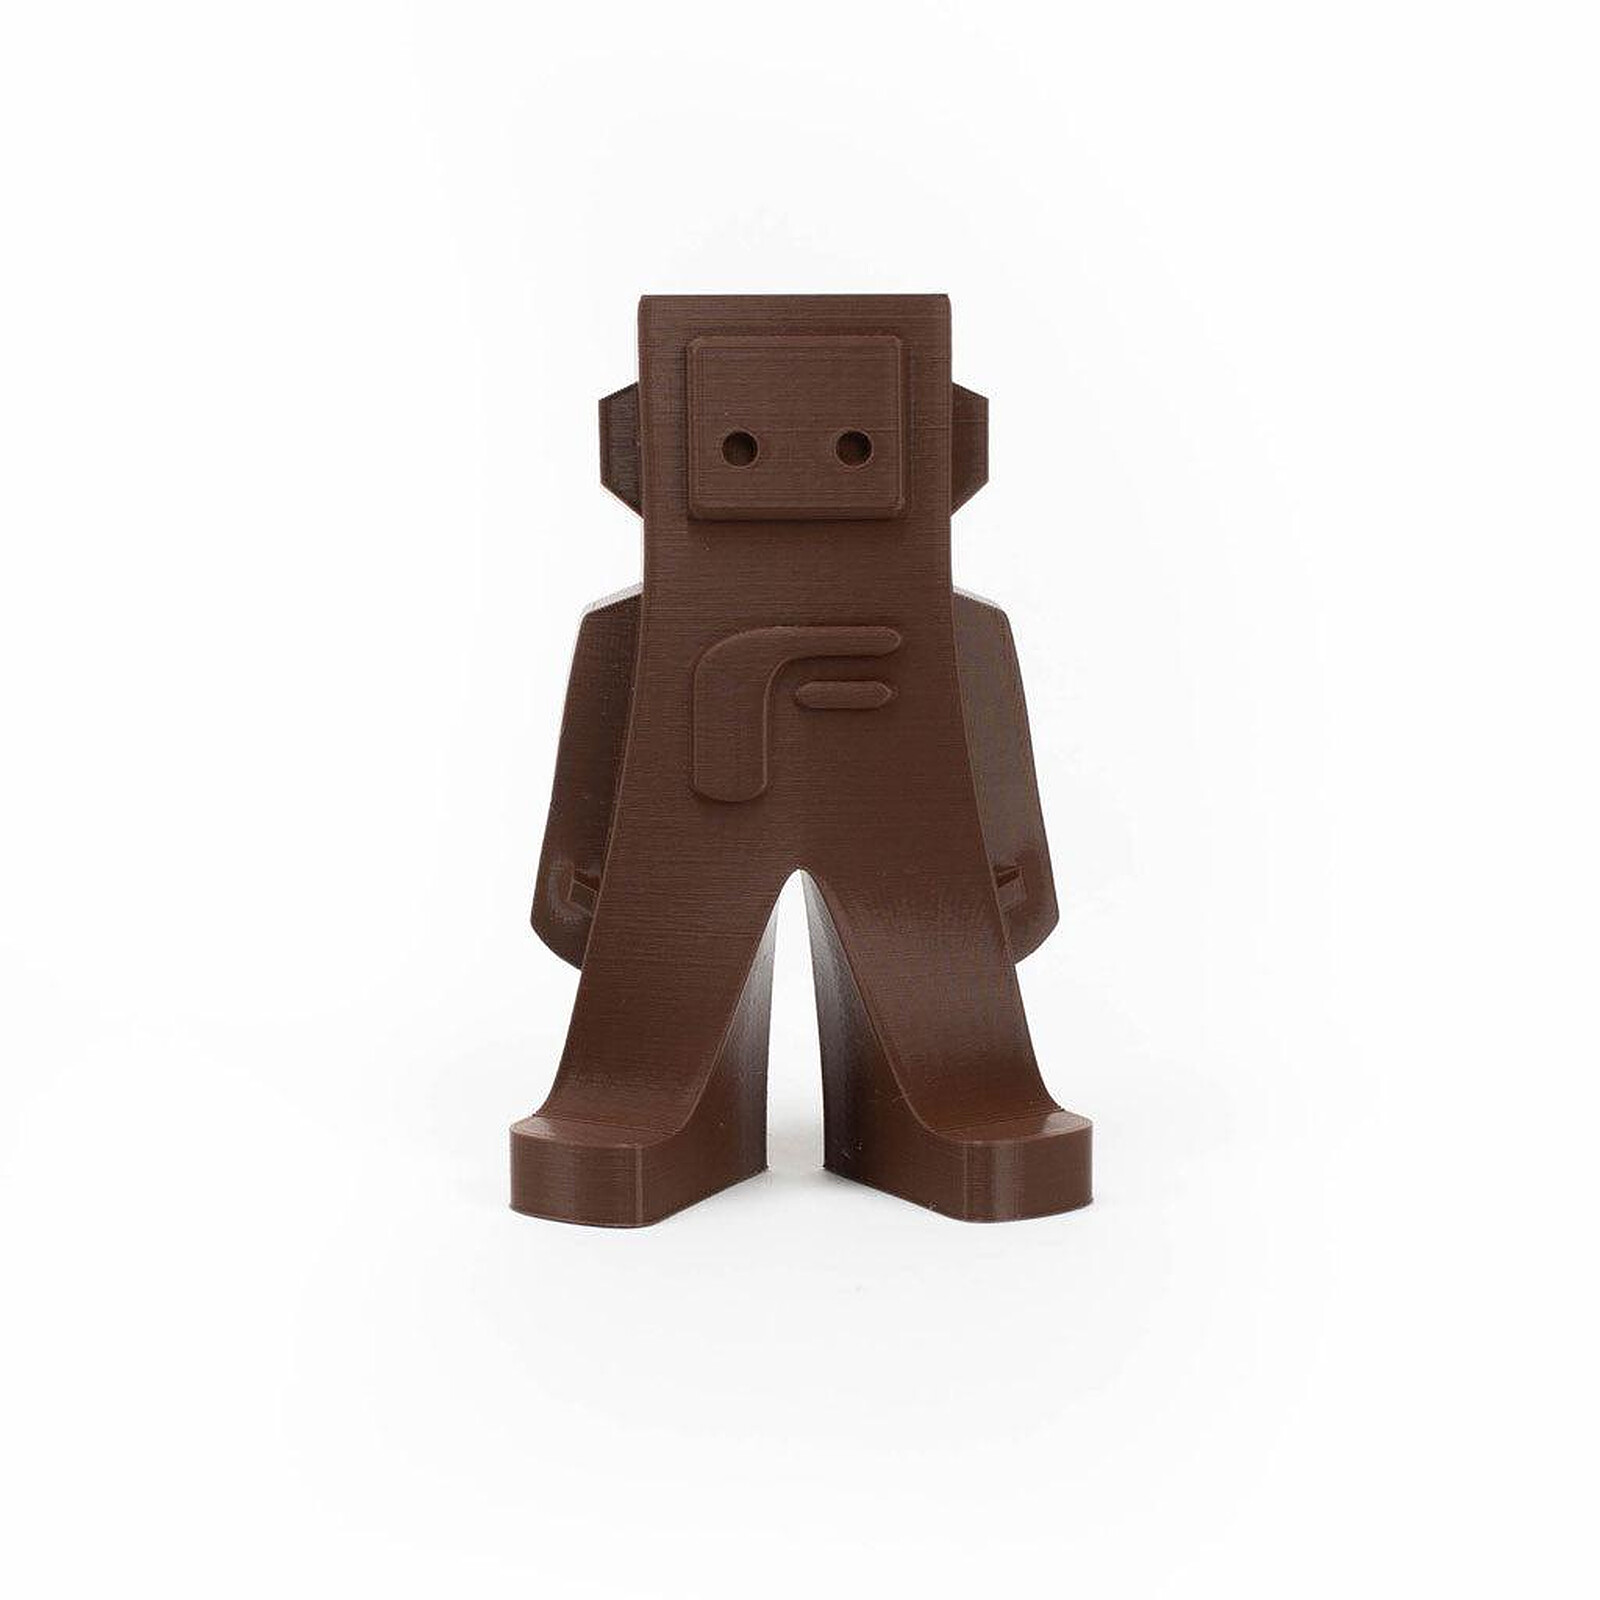 Spectrum Premium PLA marron chocolat (chocolate brown) 1,75 mm 1kg